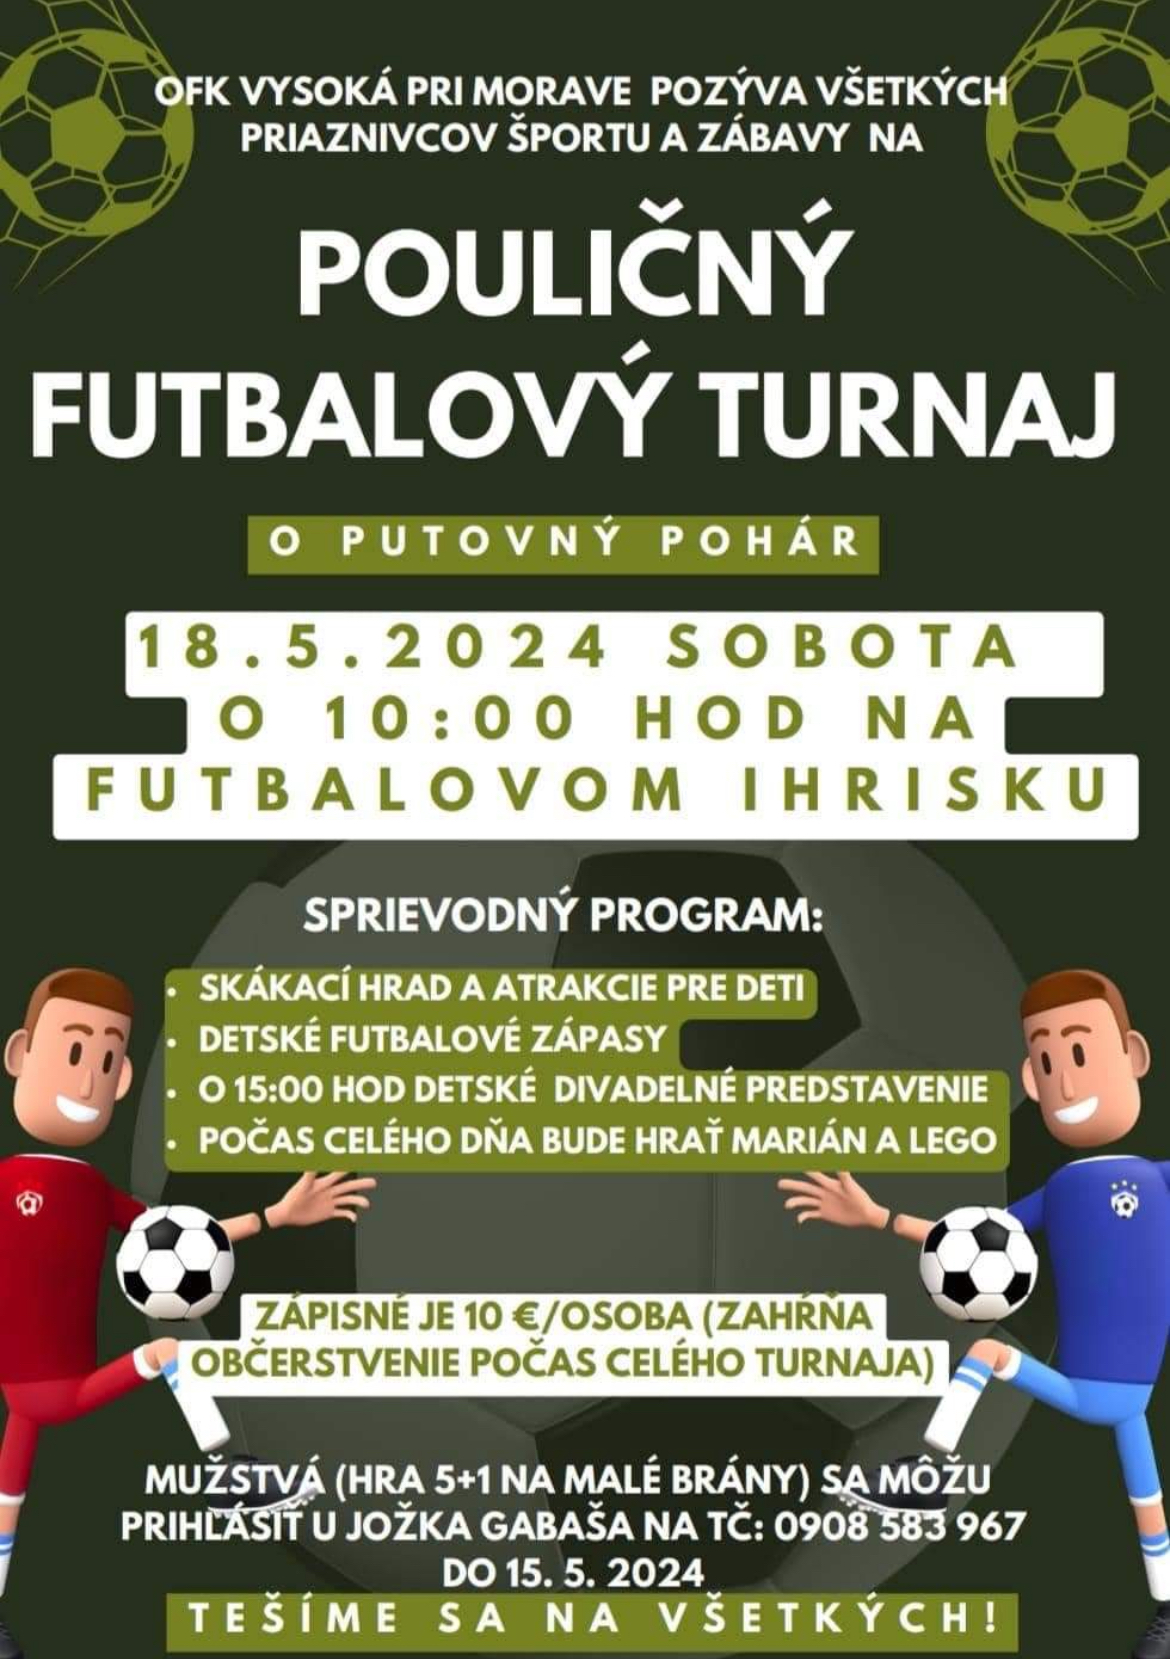 POZOR ZMENA - Pouličný futbalový turnaj sa bude konať 1.6.2024